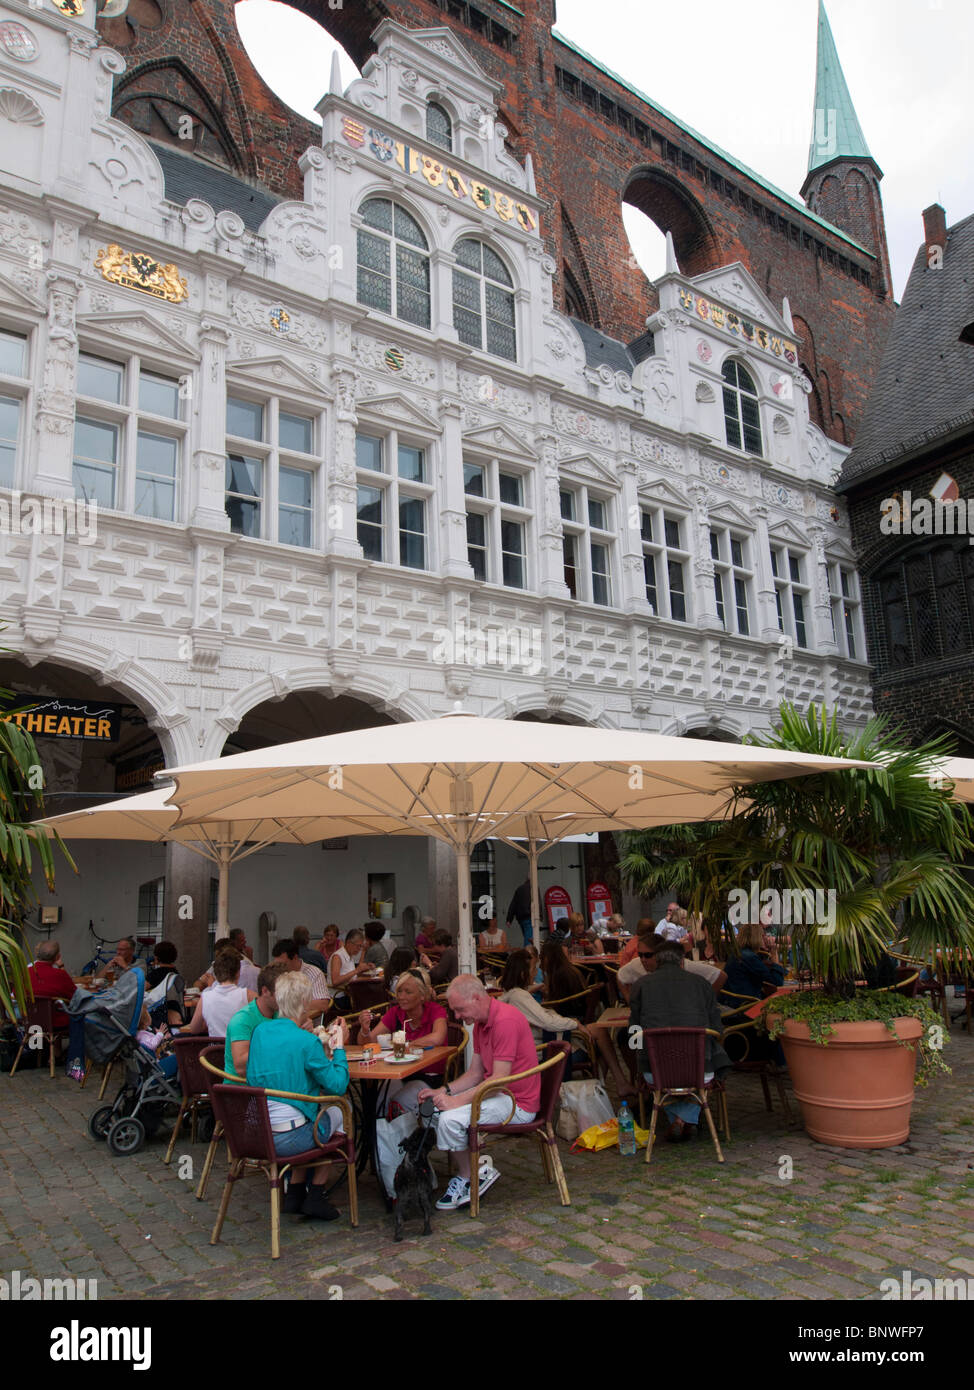 Cafe à côté de l'hôtel de ville Rathaus ou dans la ville de Lubeck en Allemagne Banque D'Images